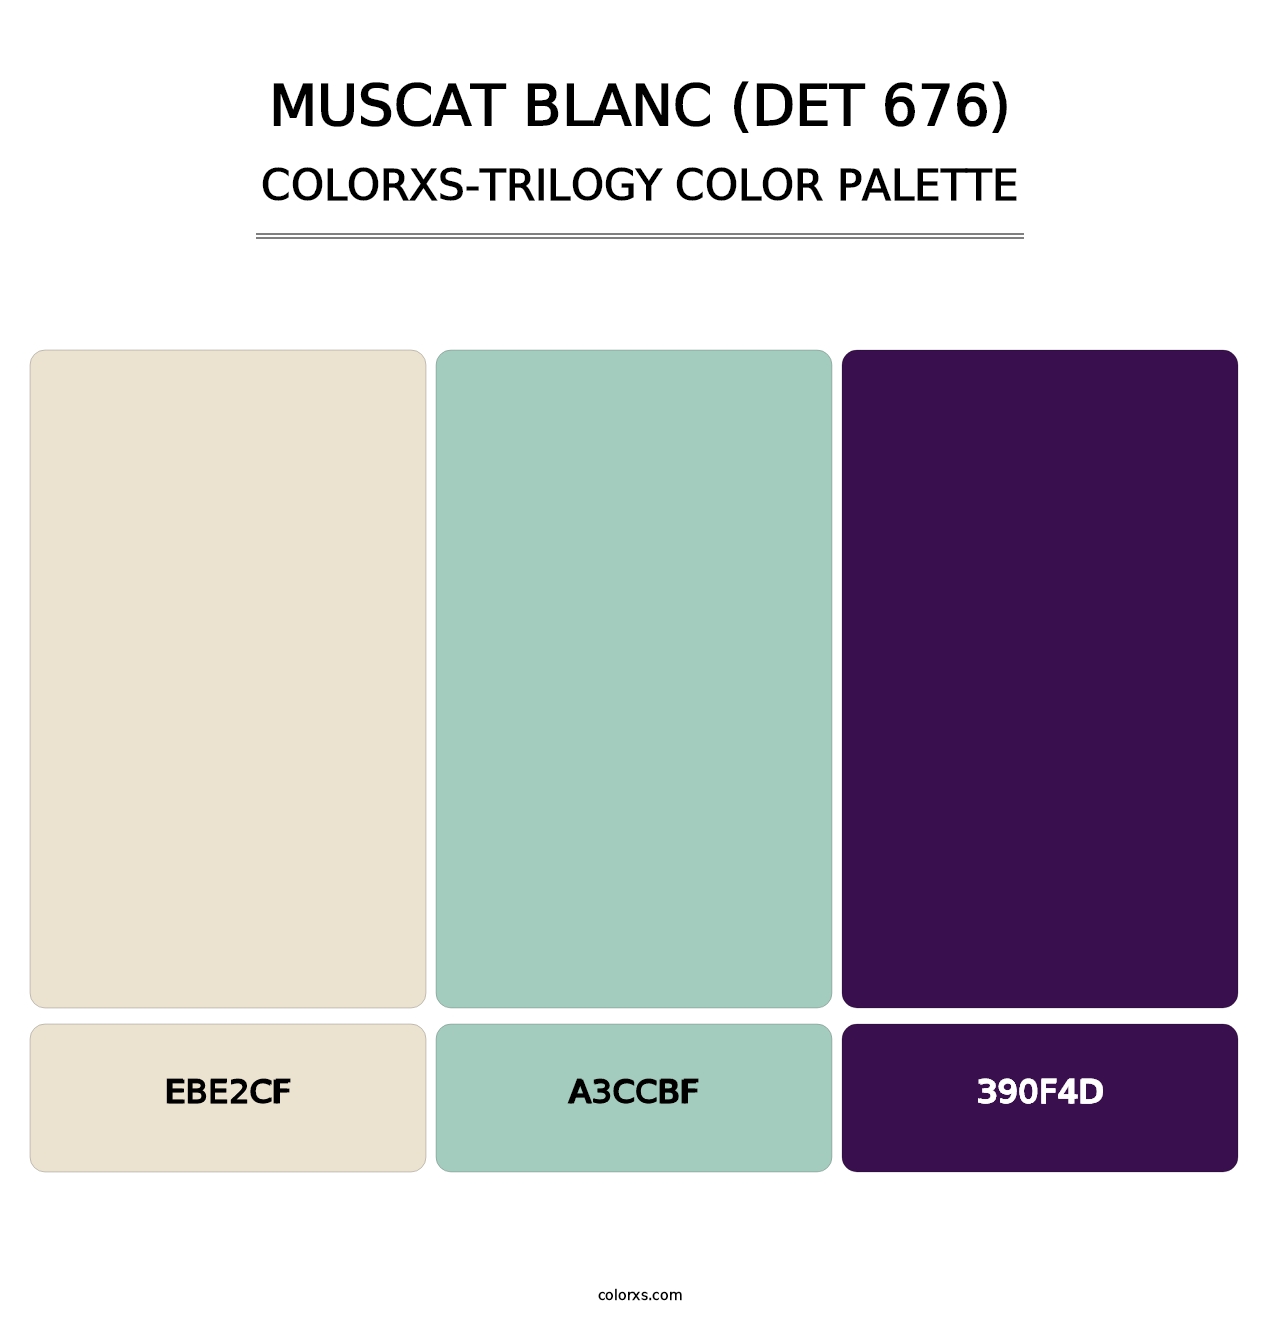 Muscat Blanc (DET 676) - Colorxs Trilogy Palette